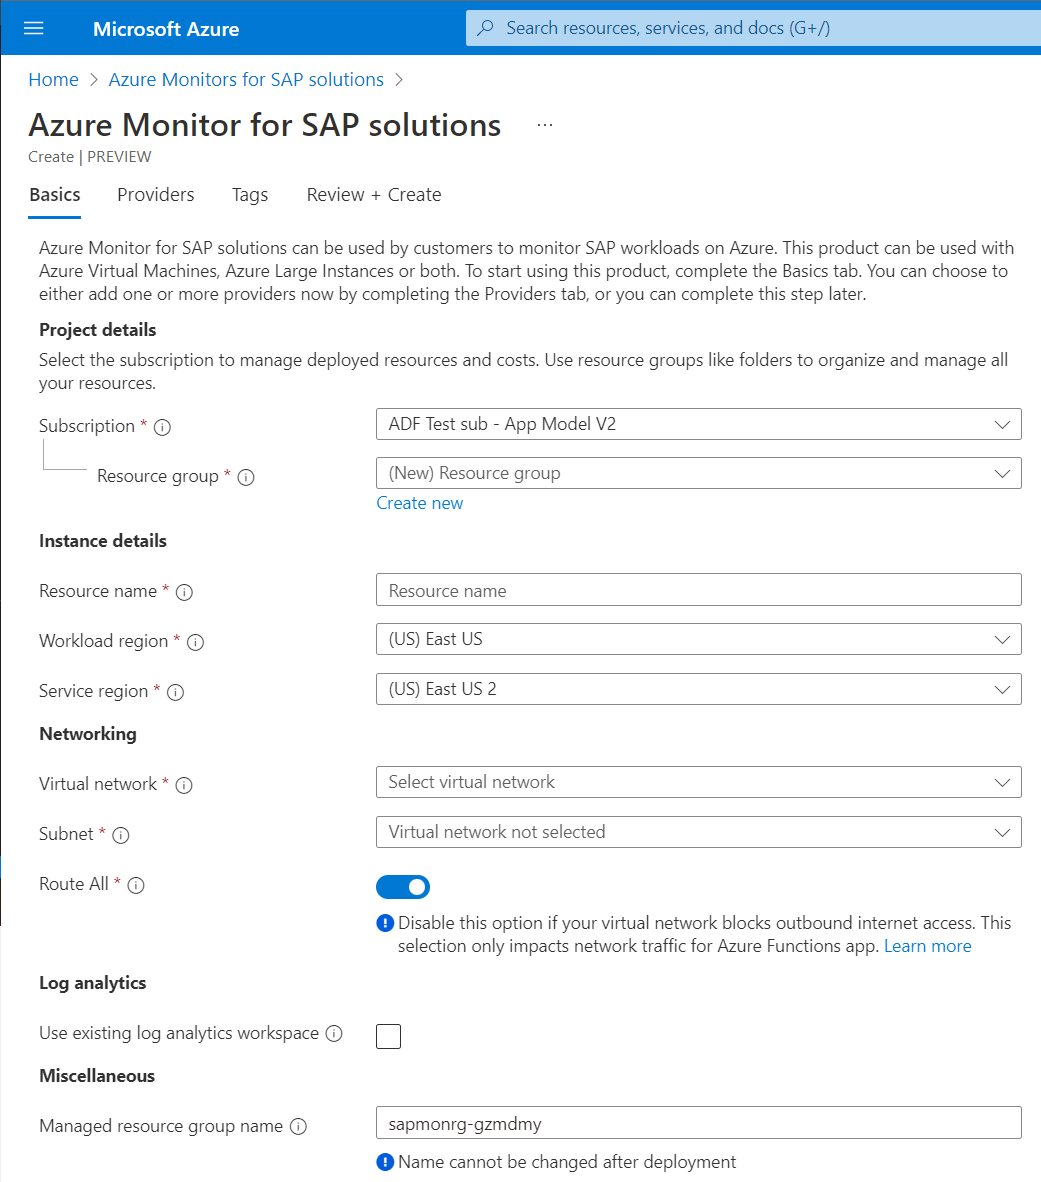 Captura de pantalla que muestra los detalles básicos de una instancia de Azure Monitor para soluciones de SAP.